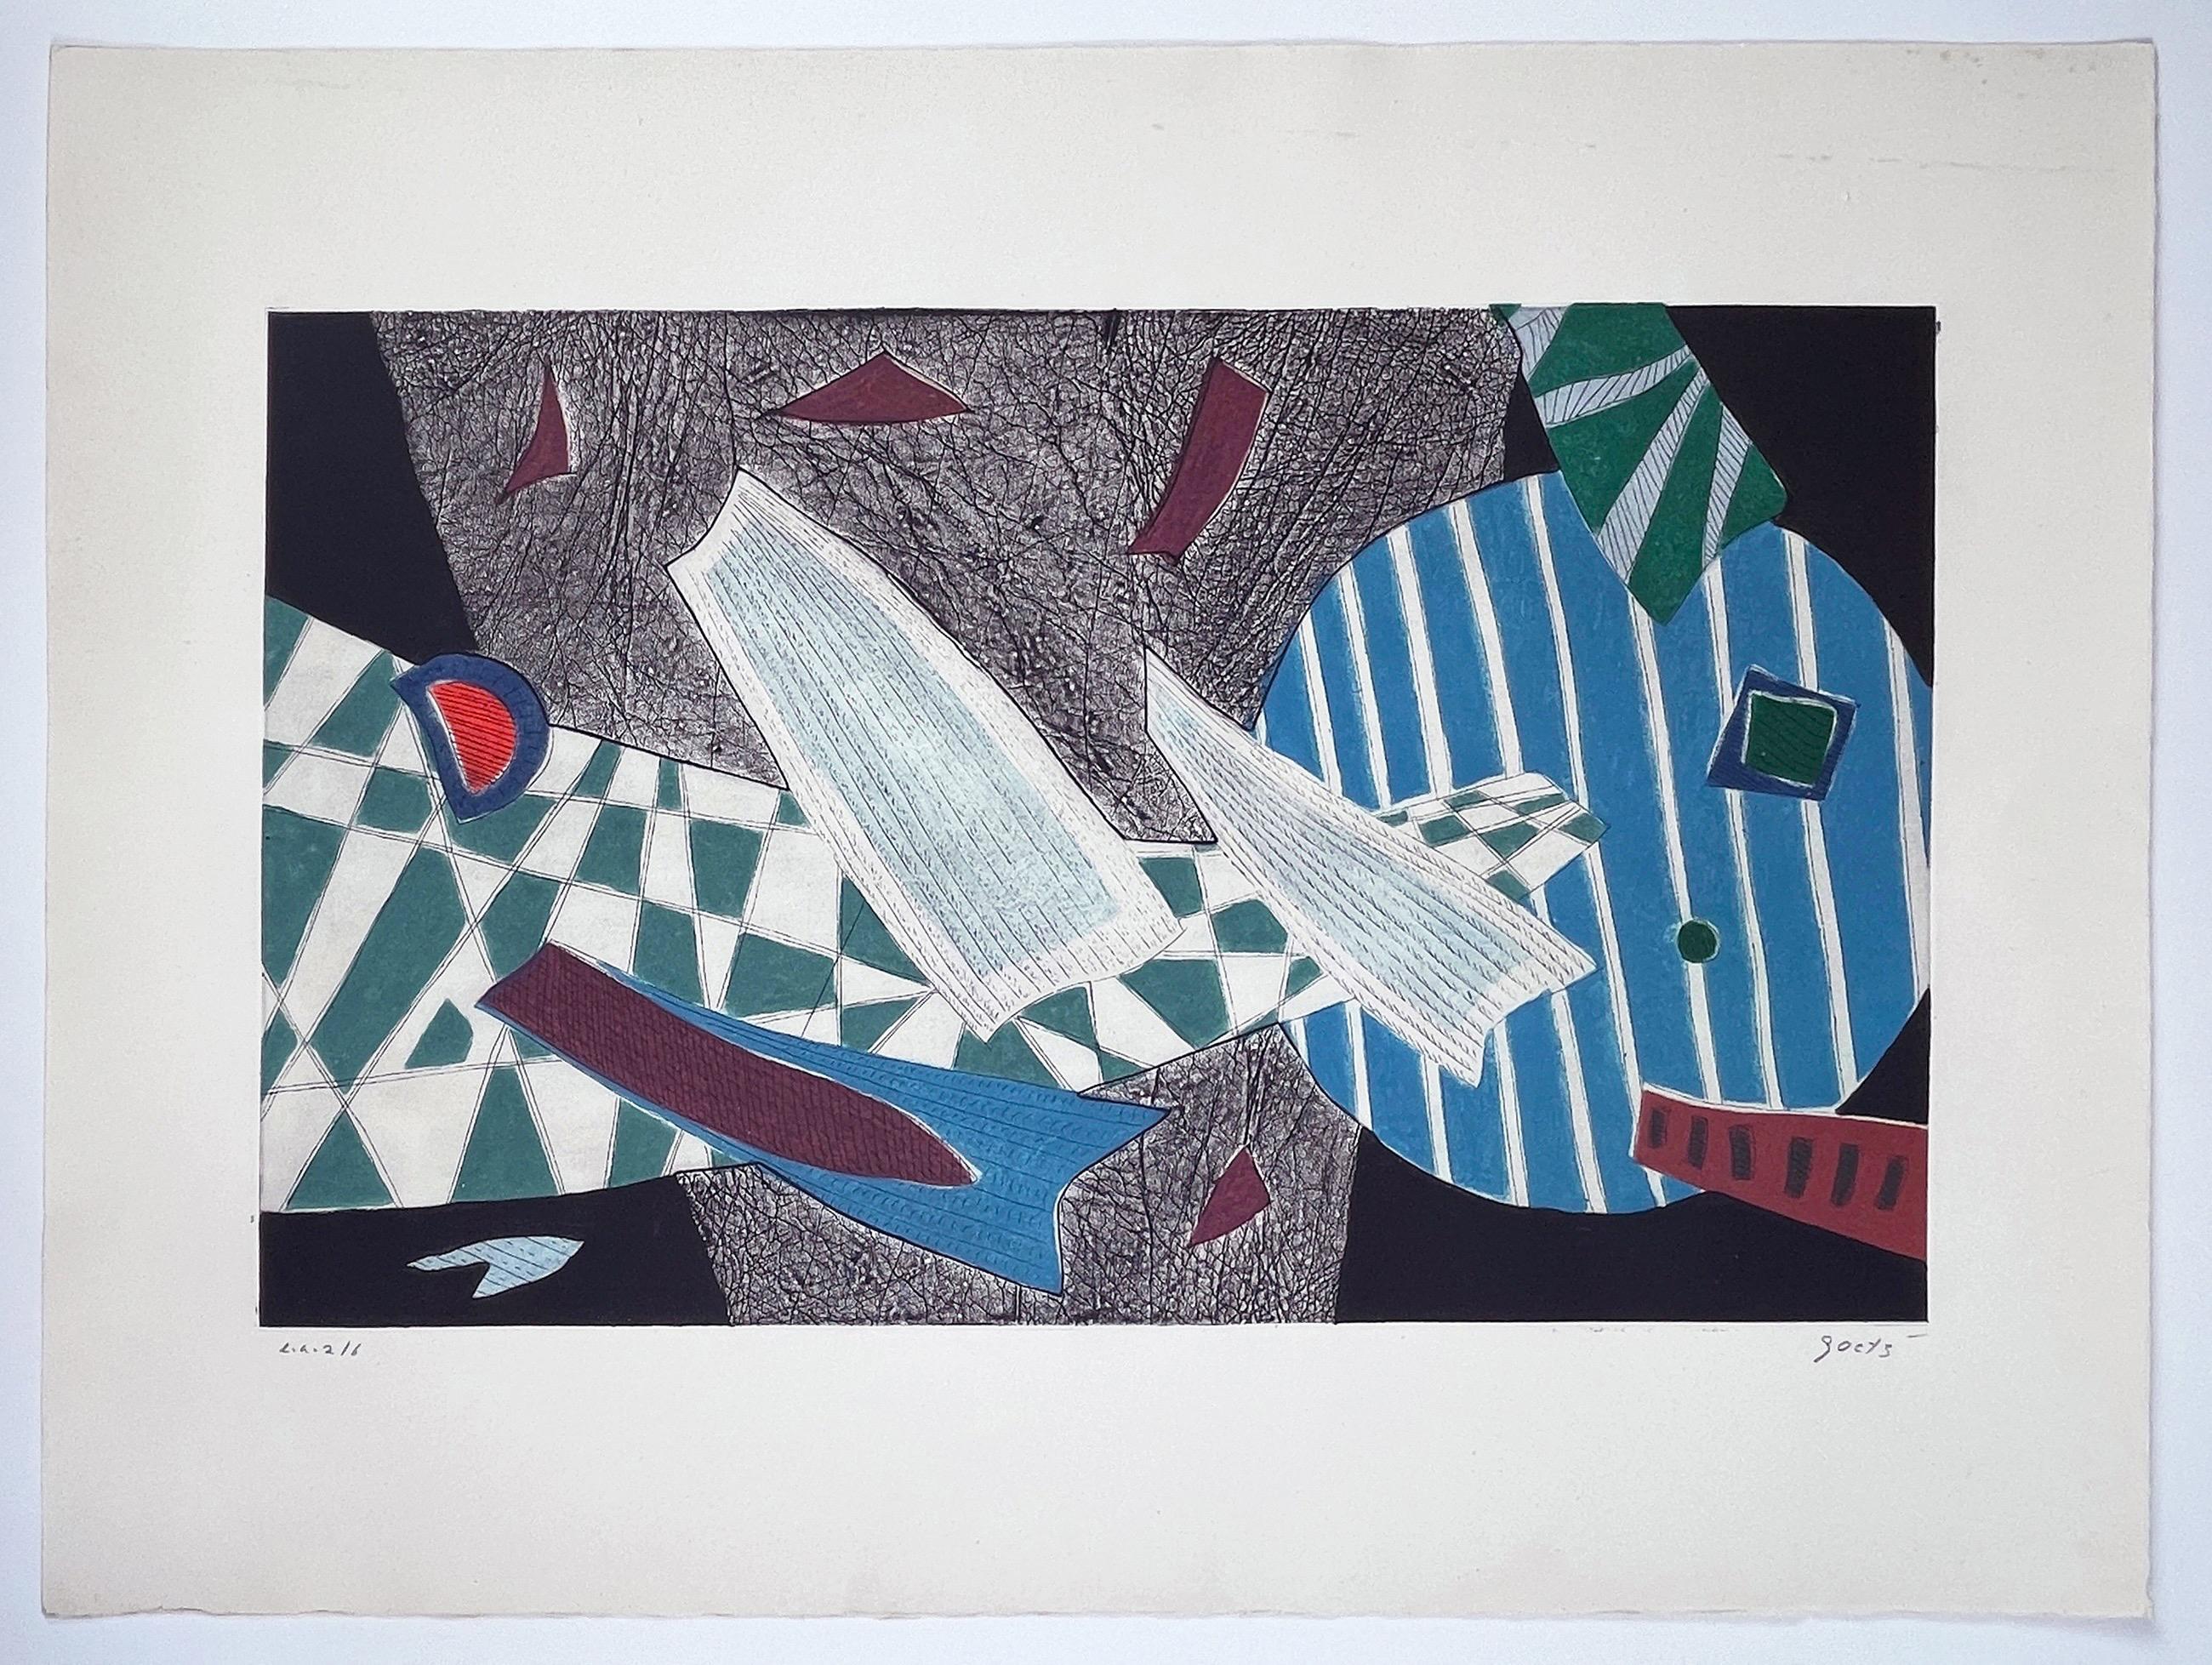 Suite aus vier Drucken von Henri Goetz, abstrakter, farbenfroher, geometrischer, surrealistischer Surrealismus